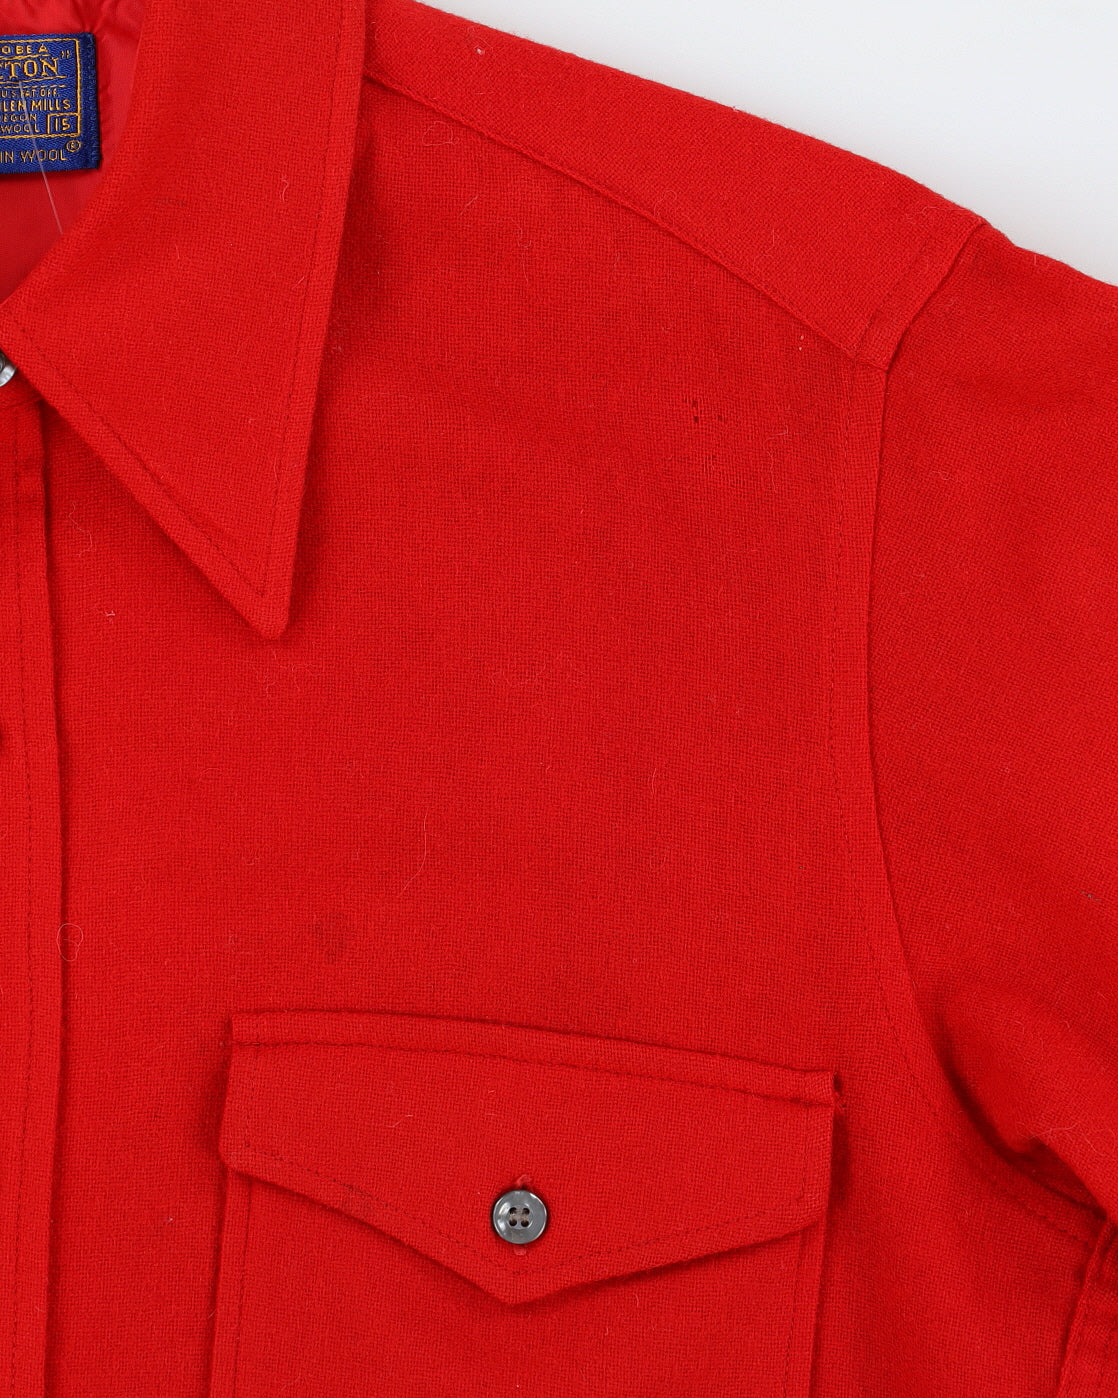 Vintage 70s Pendleton Red Wool Shirt - L